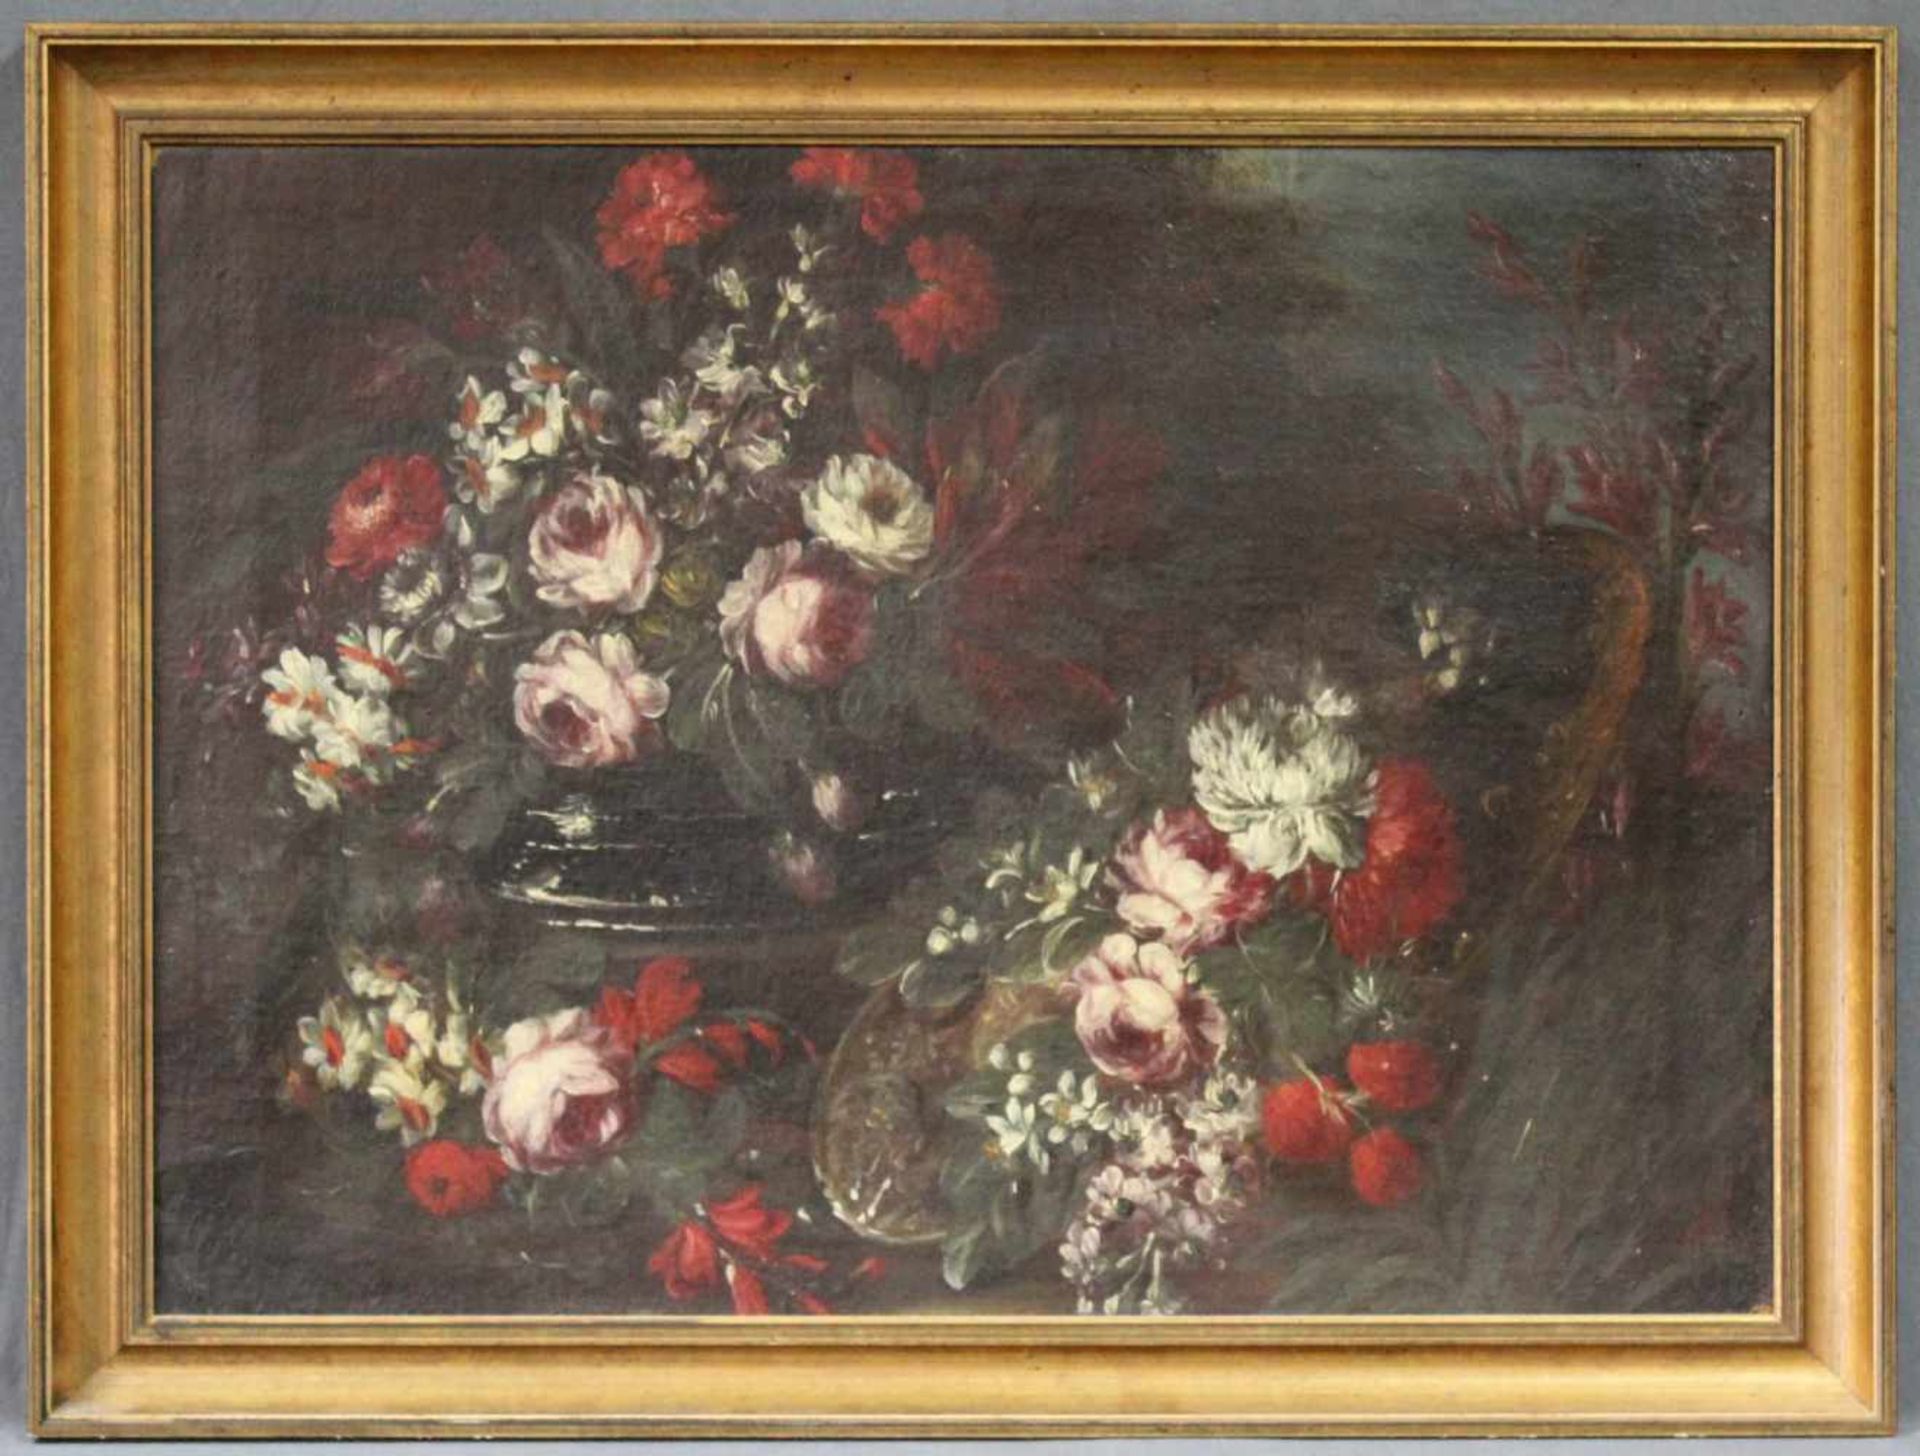 UNSIGNIERT (XVIII). Blumenstillleben. Ende 18. Jahrhundert. 53 cm x 73 cm. Gemälde, Öl auf Leinwand. - Bild 2 aus 5